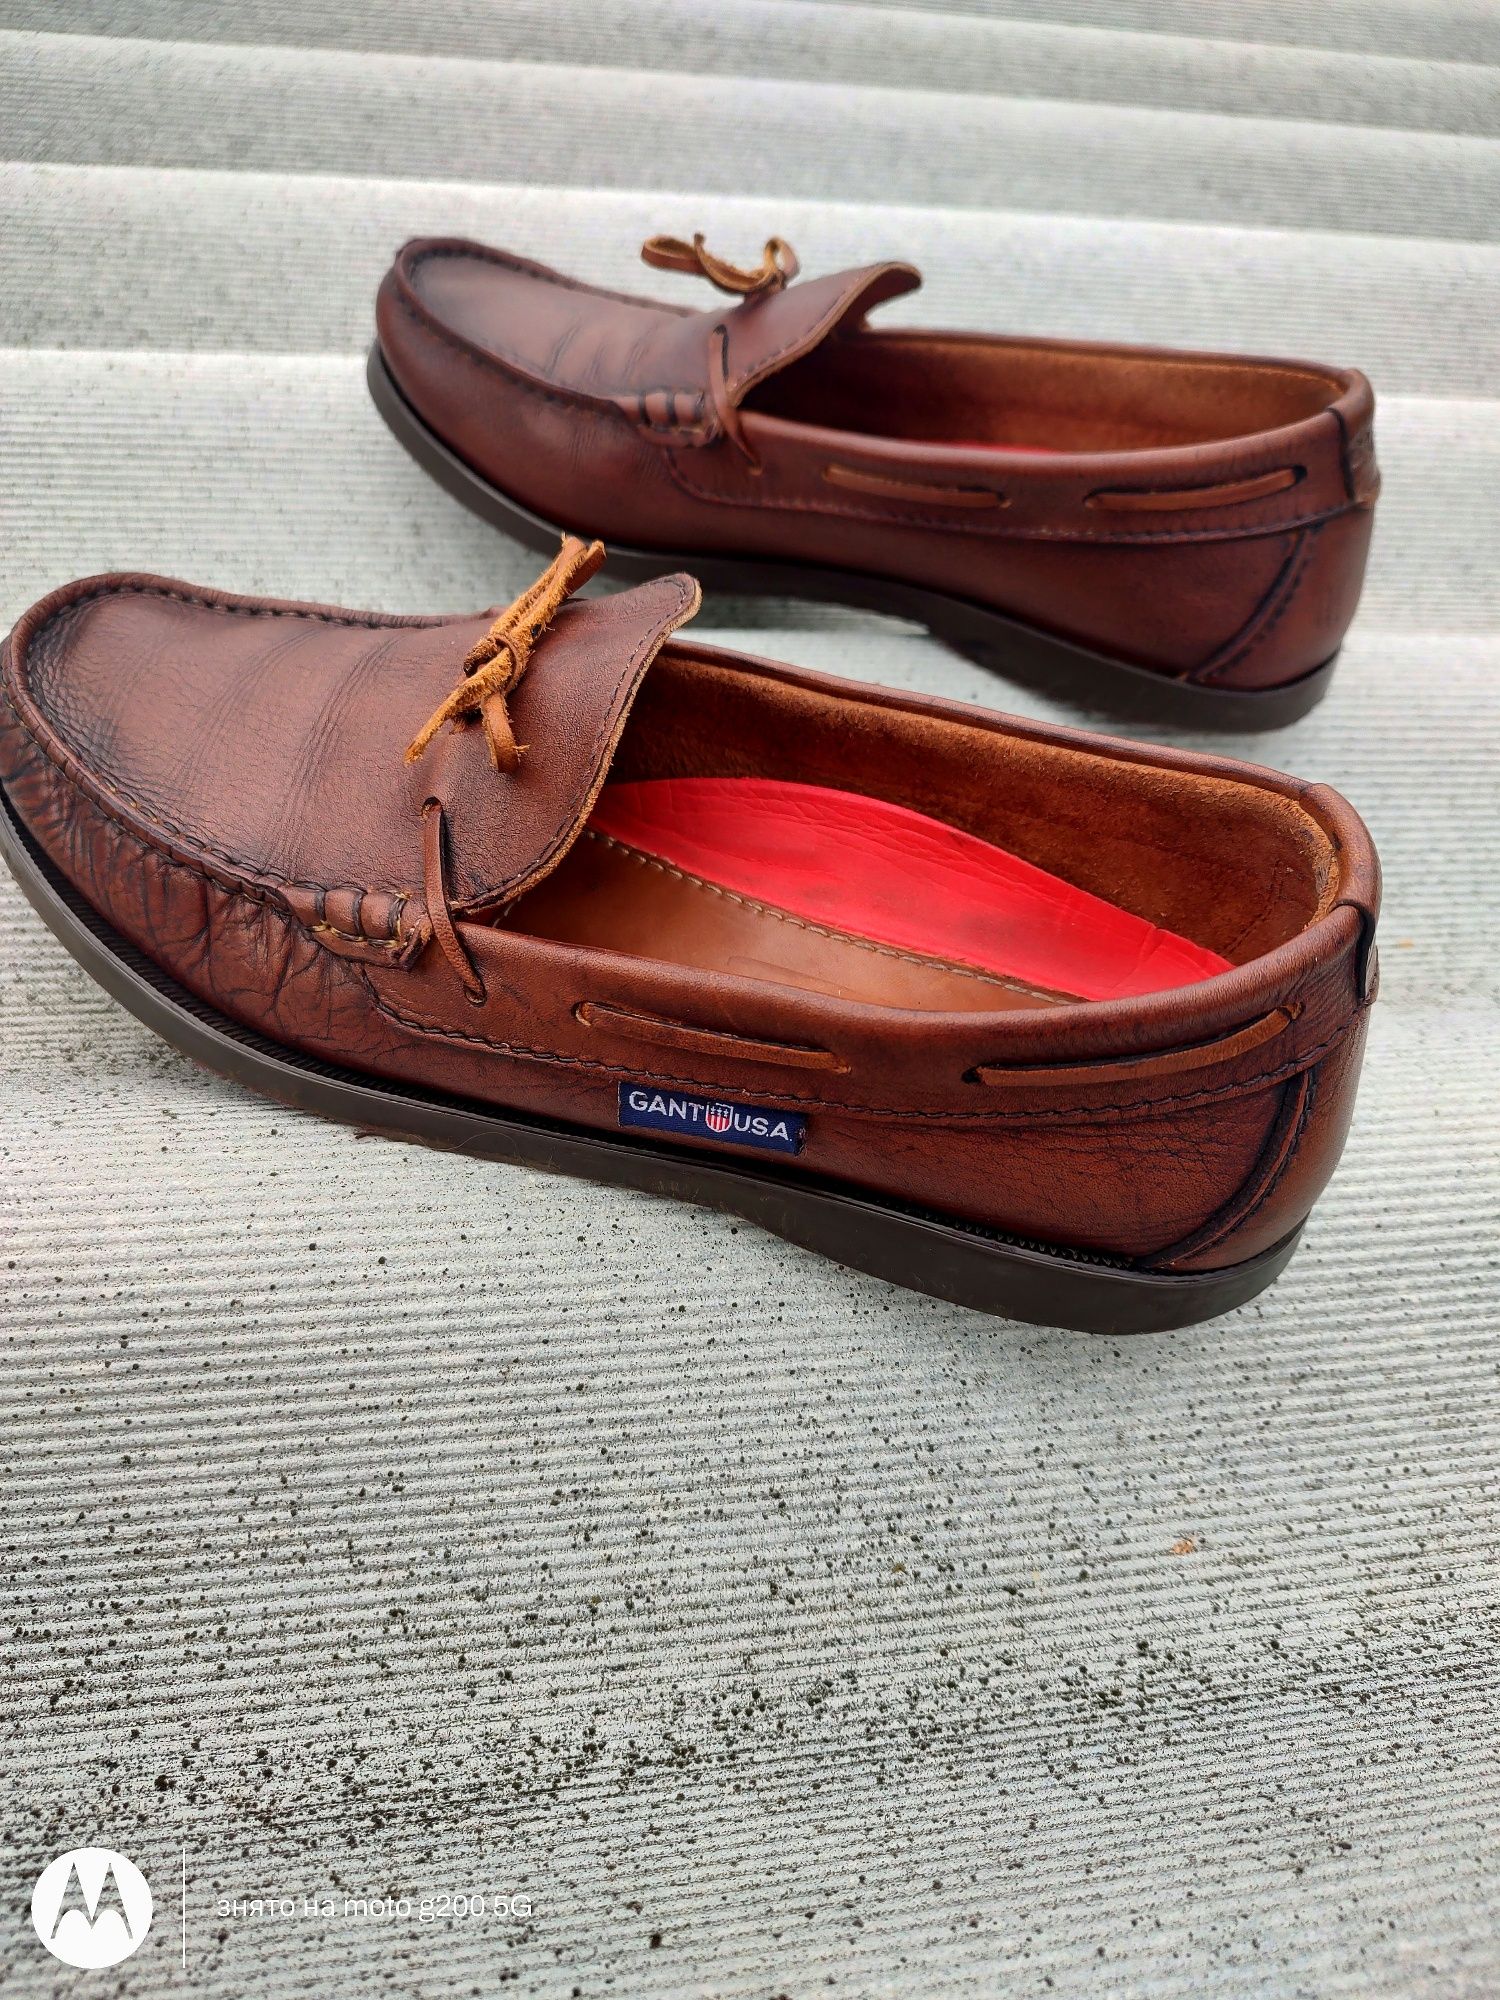 Топсайдеры Gant USA 41 размер кожаные оригинал кросовки мокасины мужск